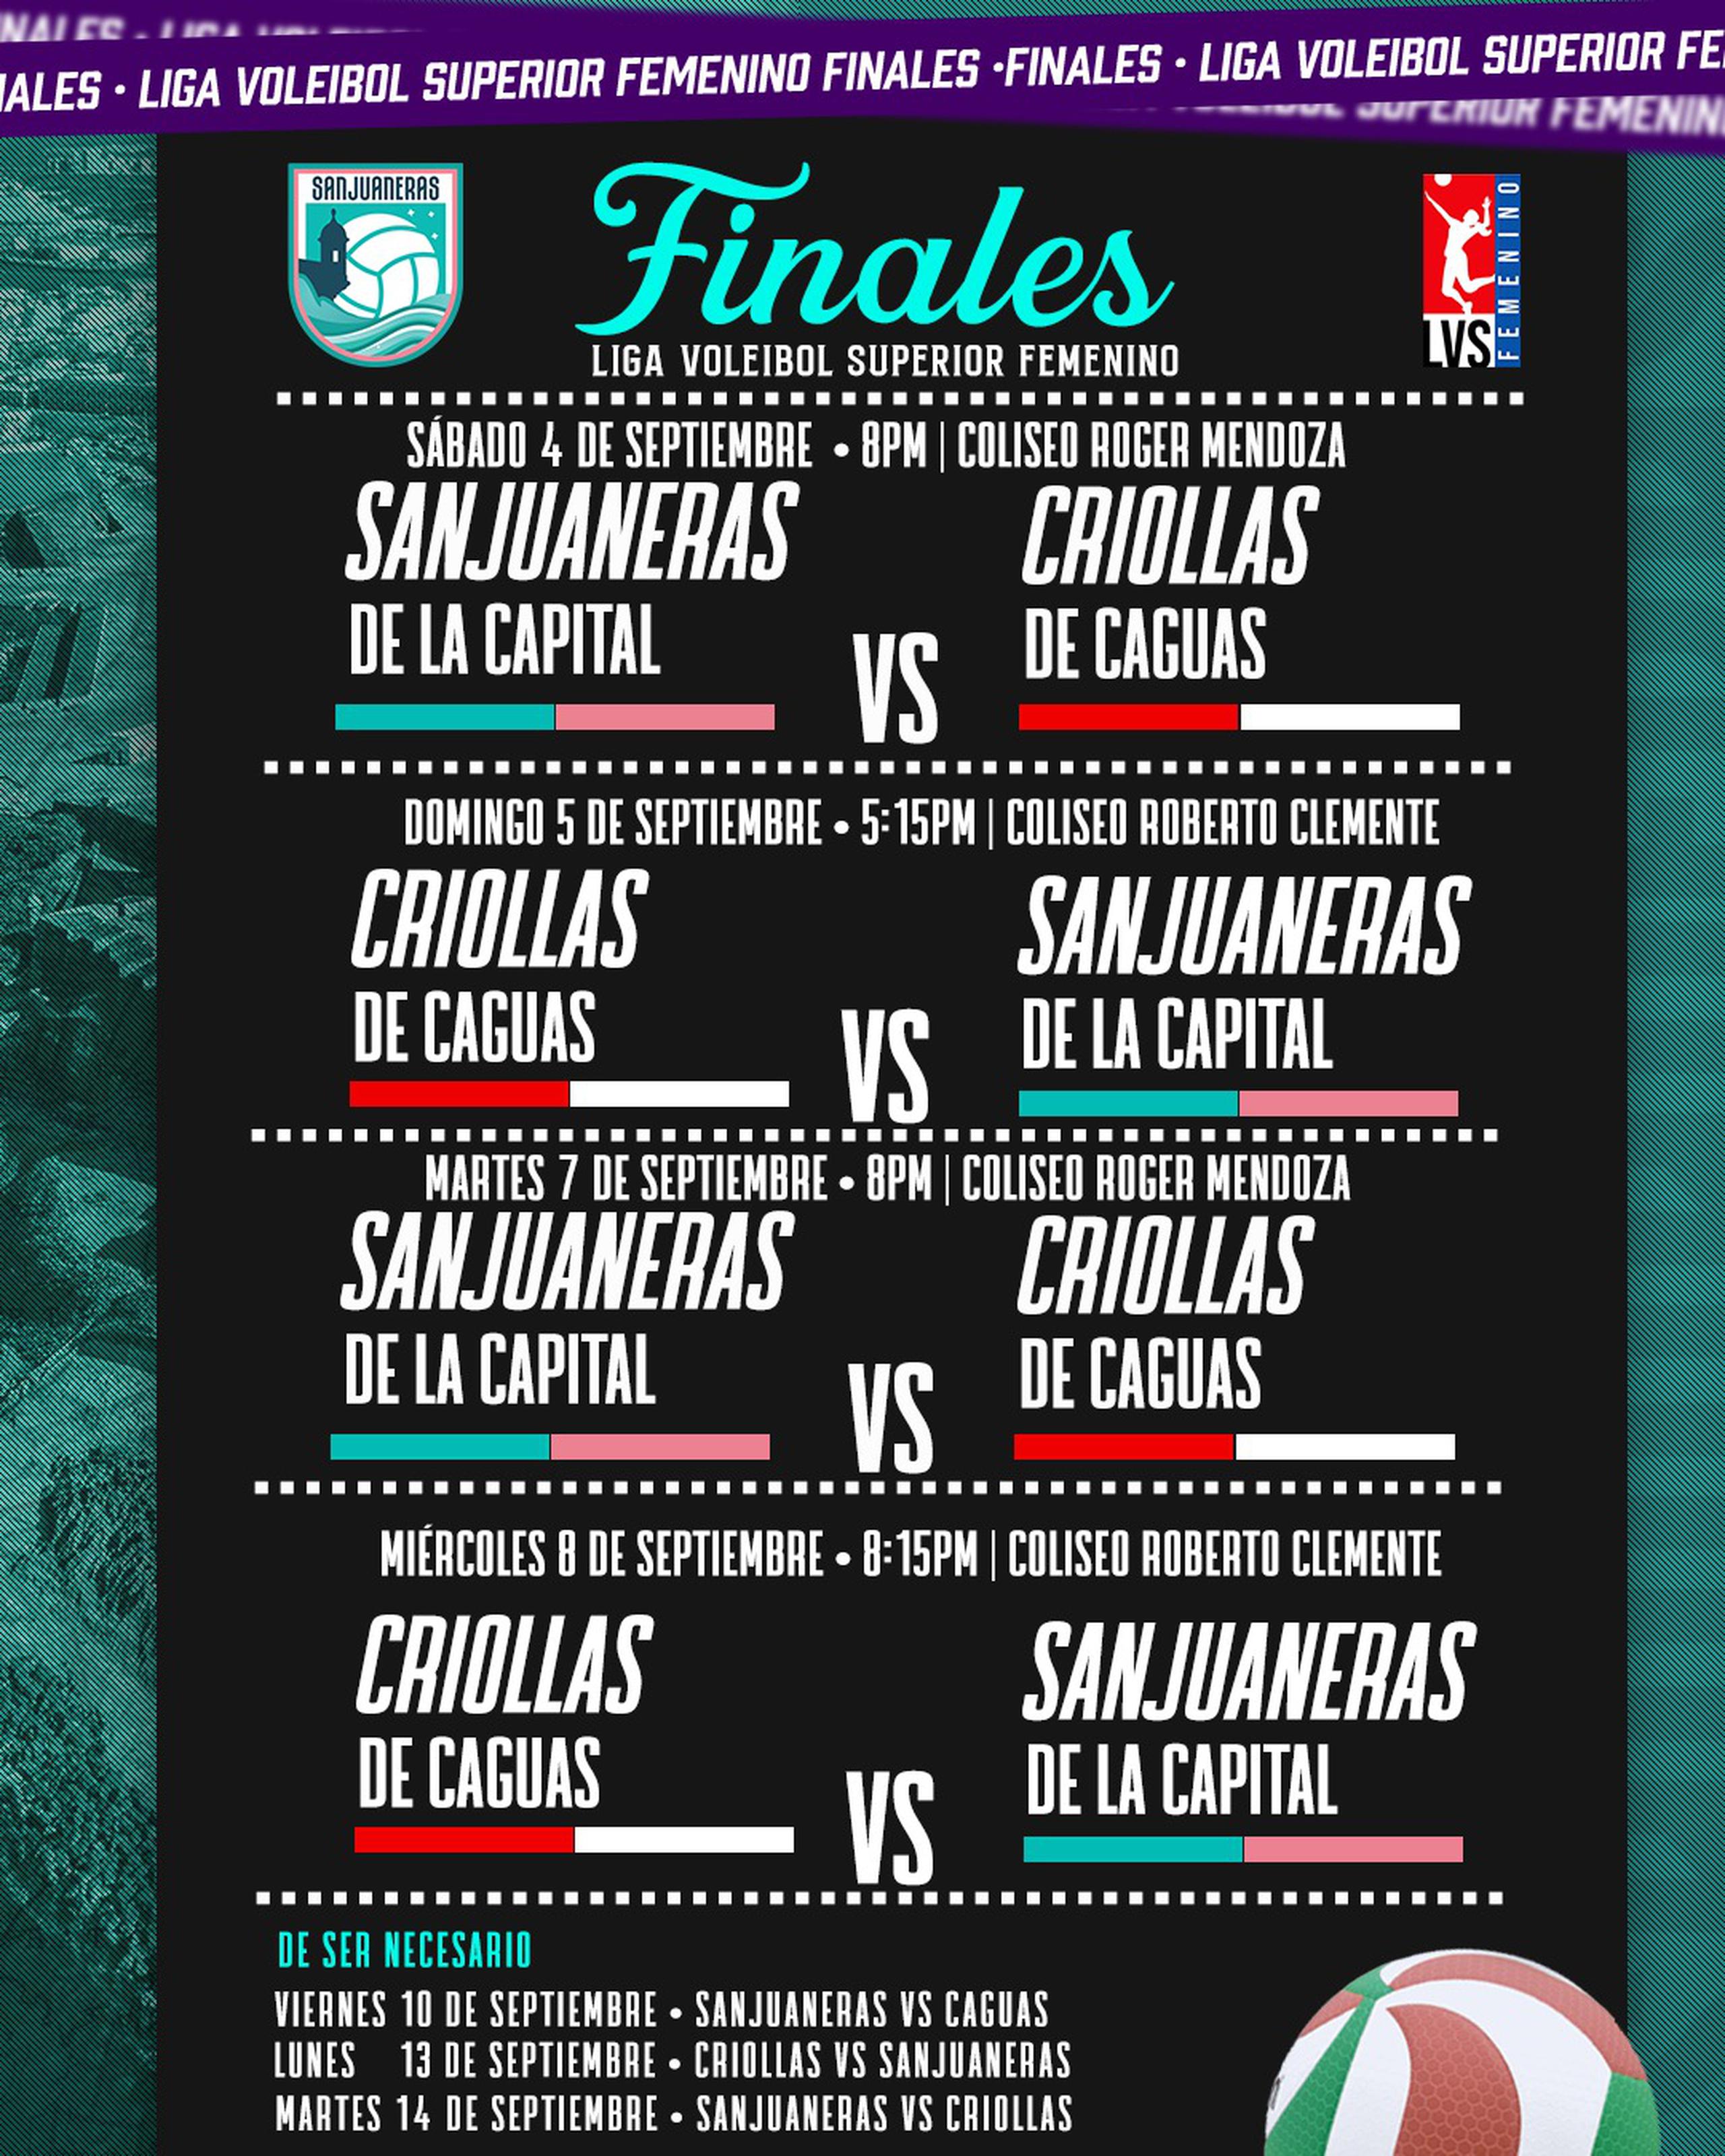 Este es el calendario de los primeros cuatro juegos de la serie final del Voleibol Superior.